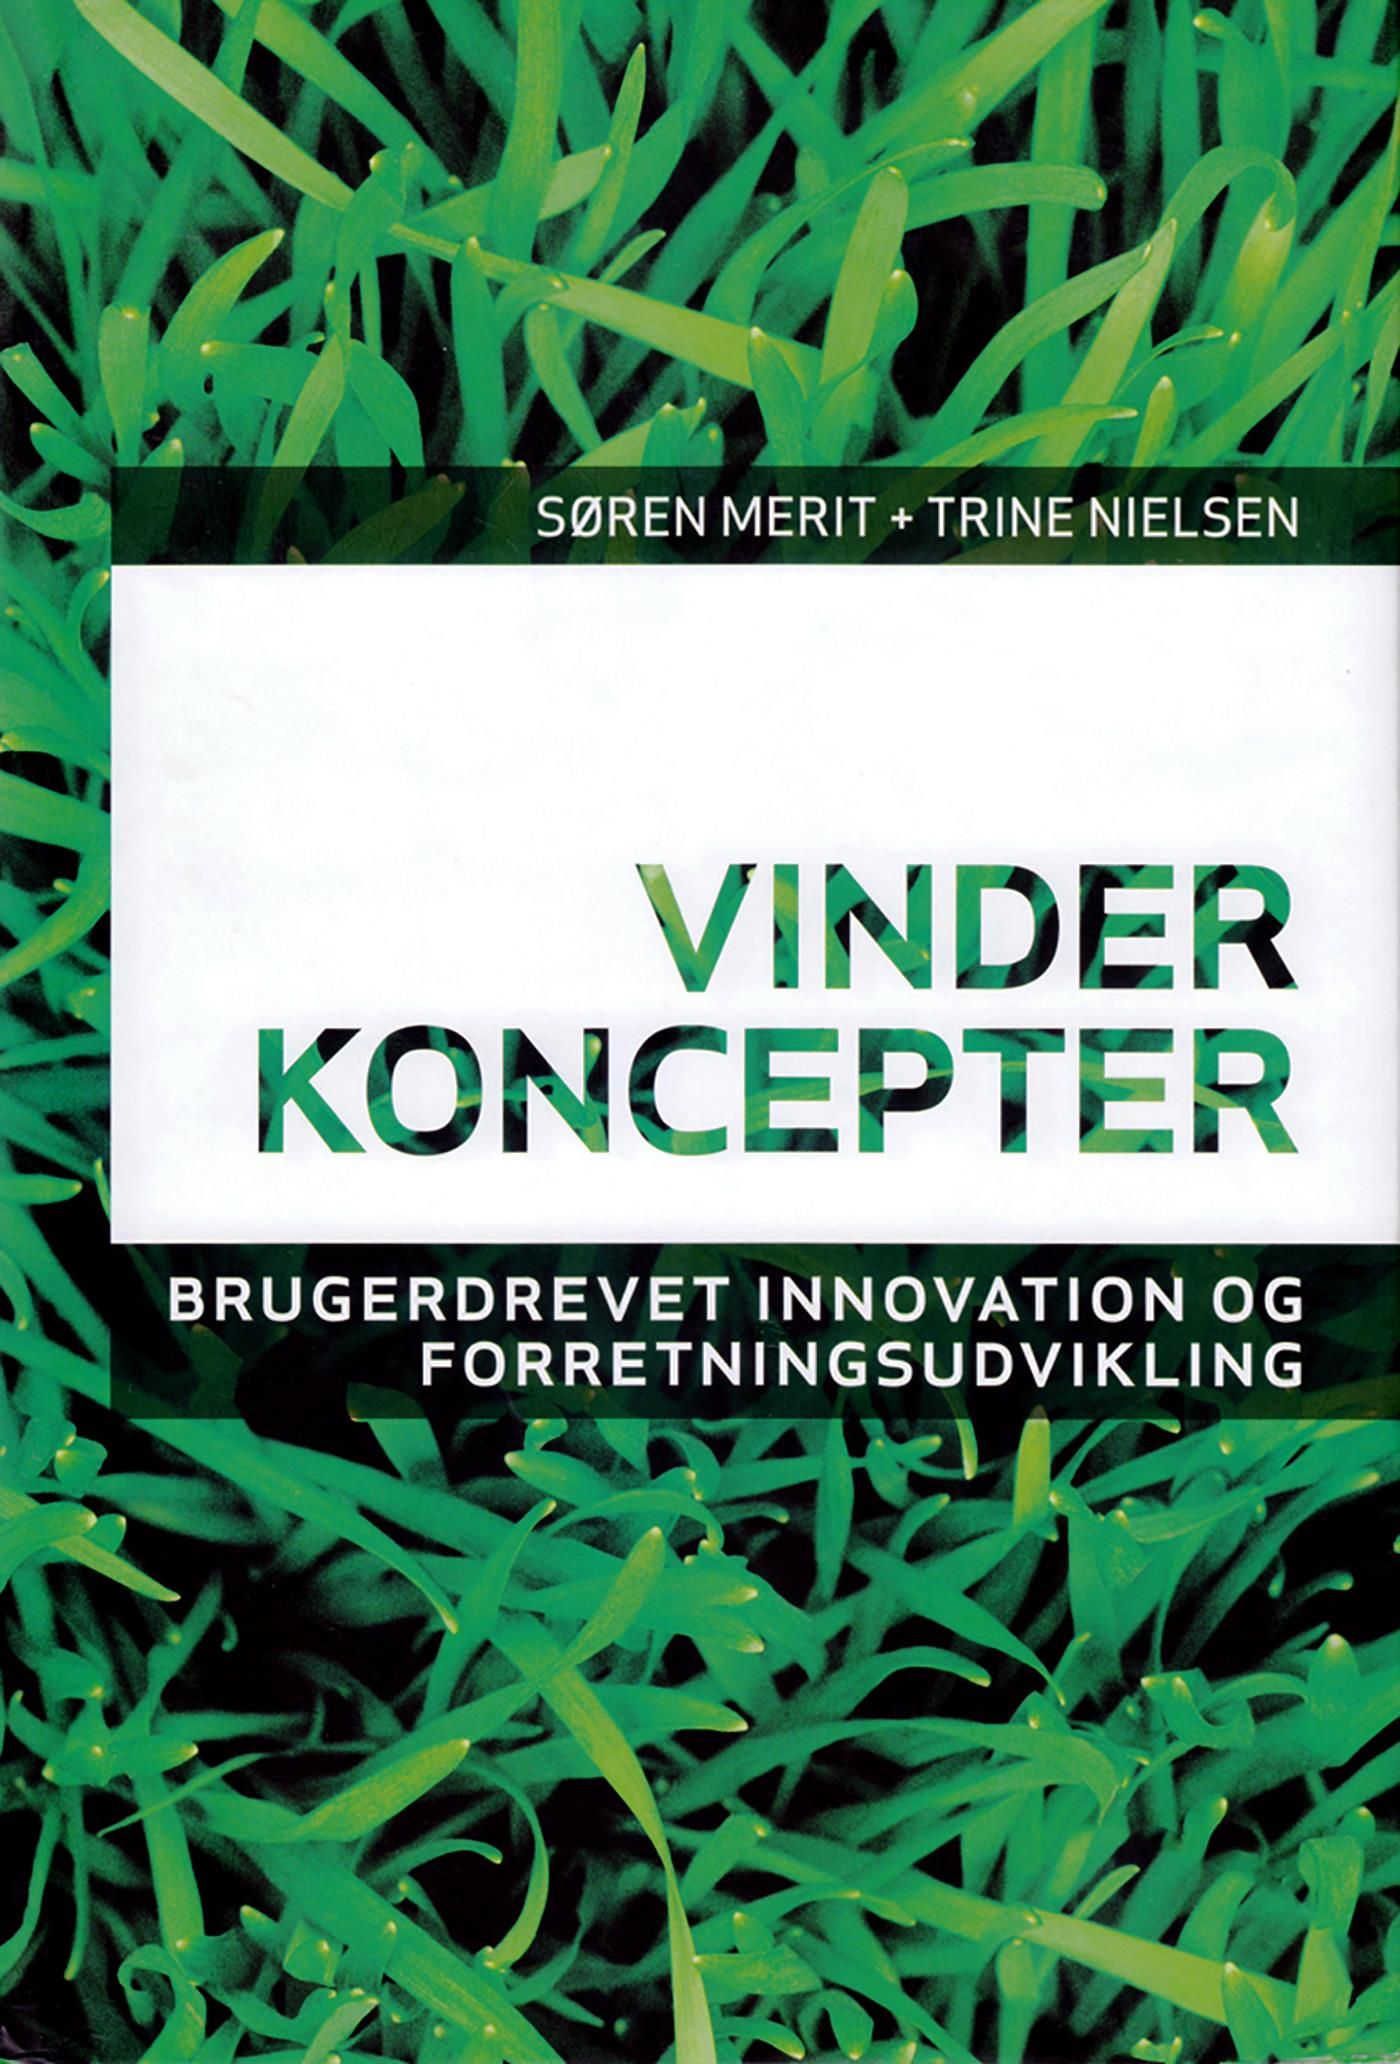 Vinderkoncepter, e-bok av Søren Merit, Trine Nielsen